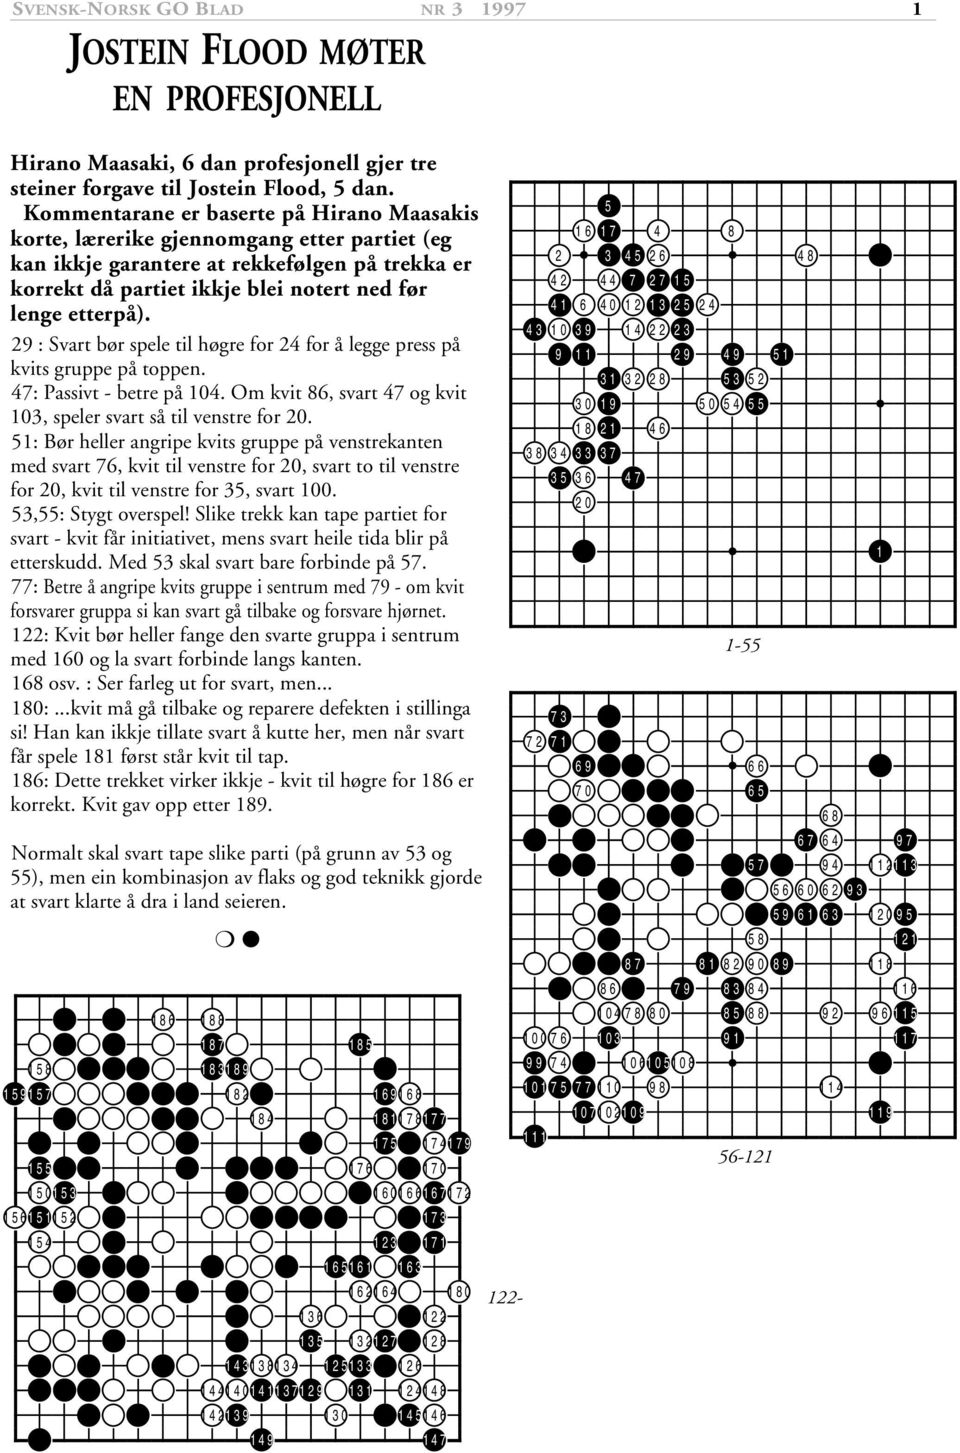 29 : Svart bør spele til høgre for 24 for å legge press på kvits gruppe på toppen. 47: Passivt - betre på 104. Om kvit 86, svart 47 og kvit 103, speler svart så til venstre for 20.